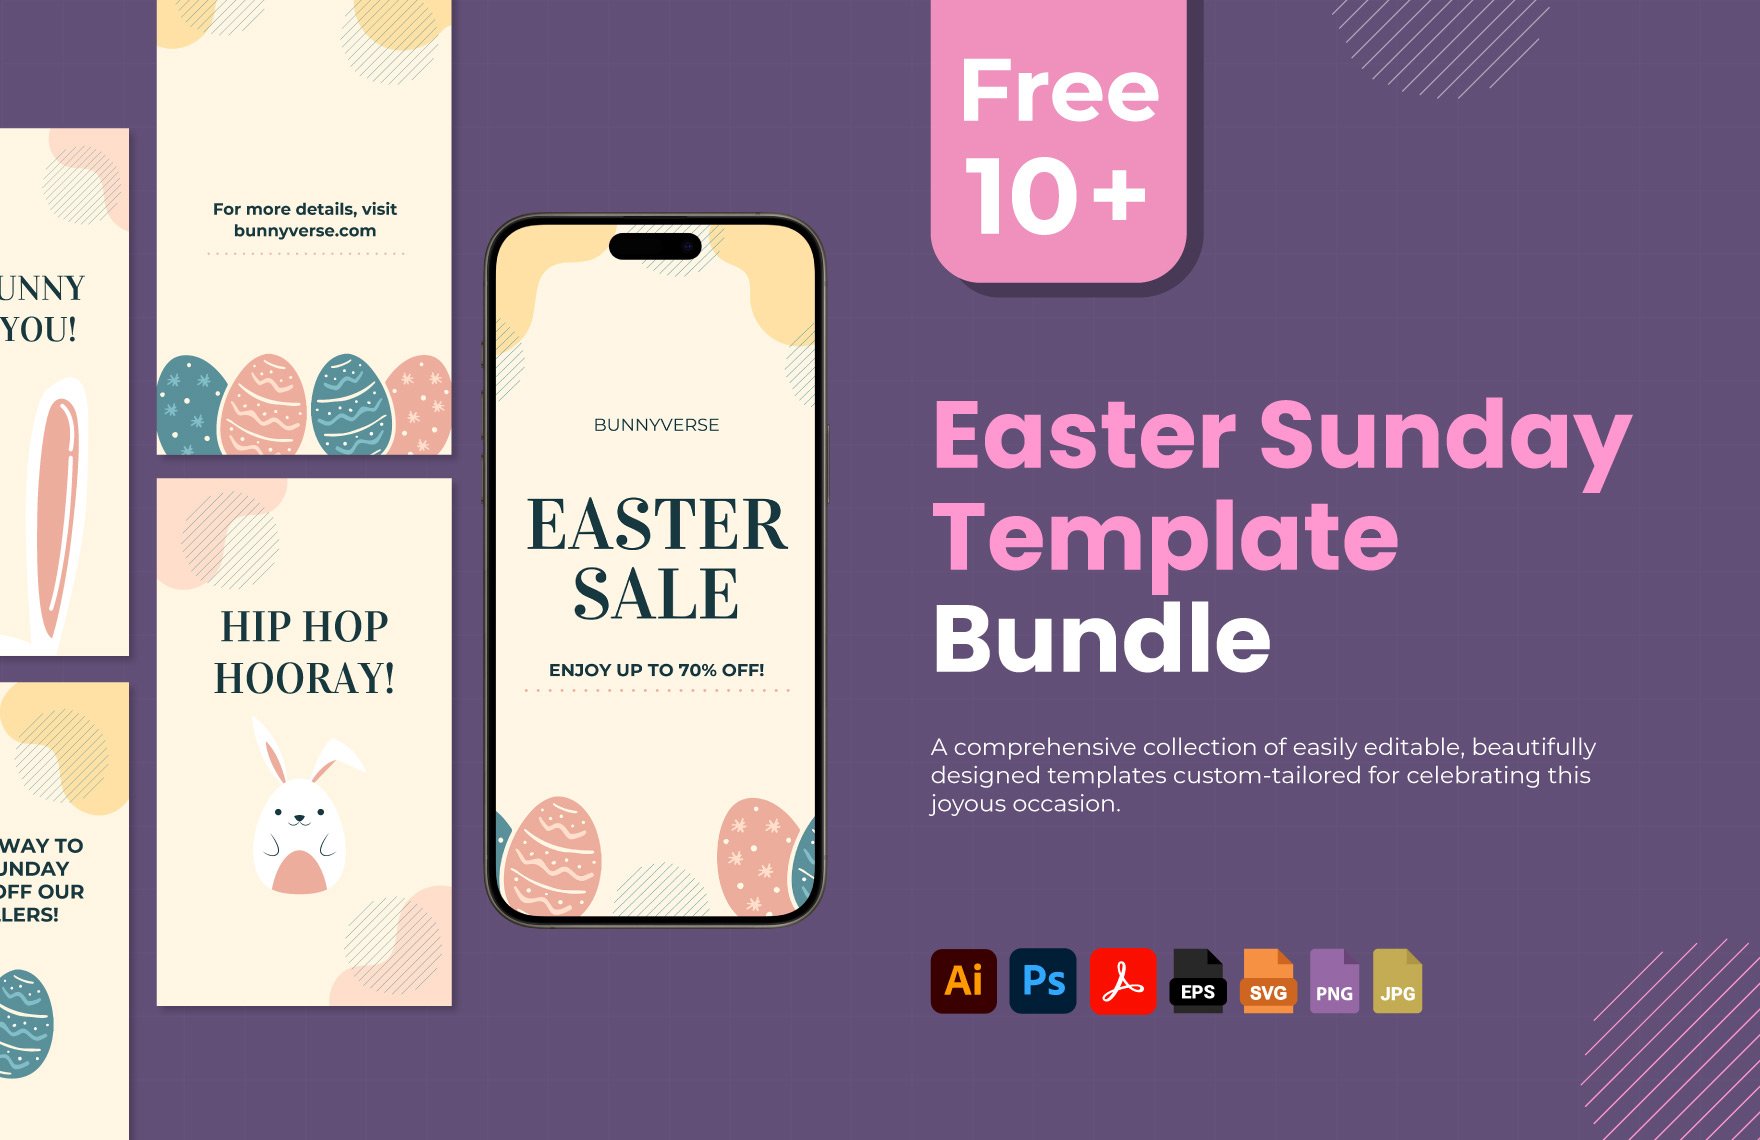 Free 10+ Easter Sunday Template Bundle in PDF, Illustrator, PSD, EPS, SVG, JPG, PNG